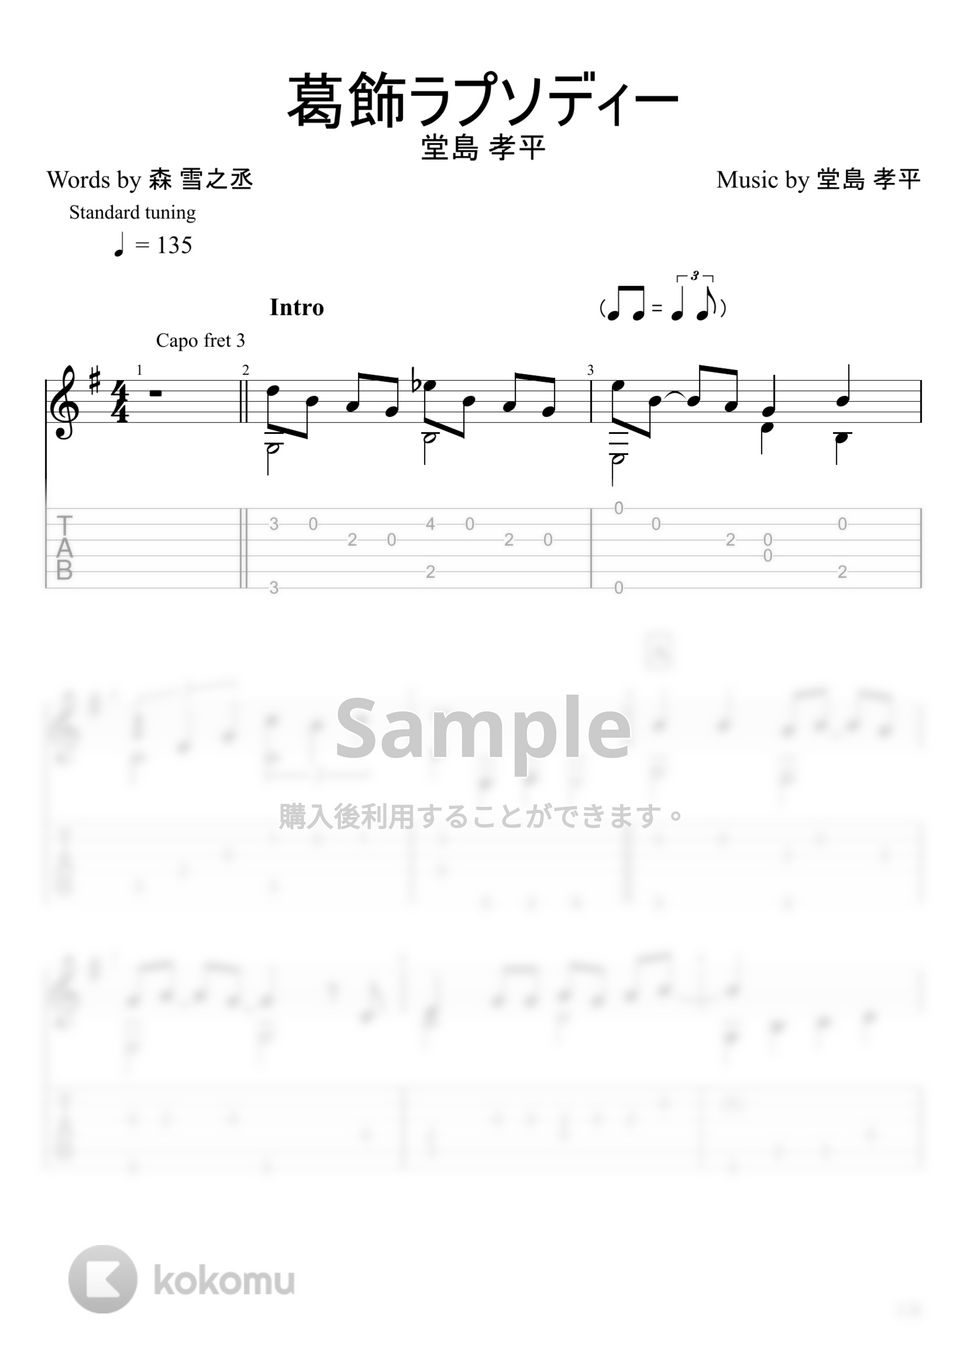 堂島孝平 - 葛飾ラプソディー (ソロギター) by u3danchou